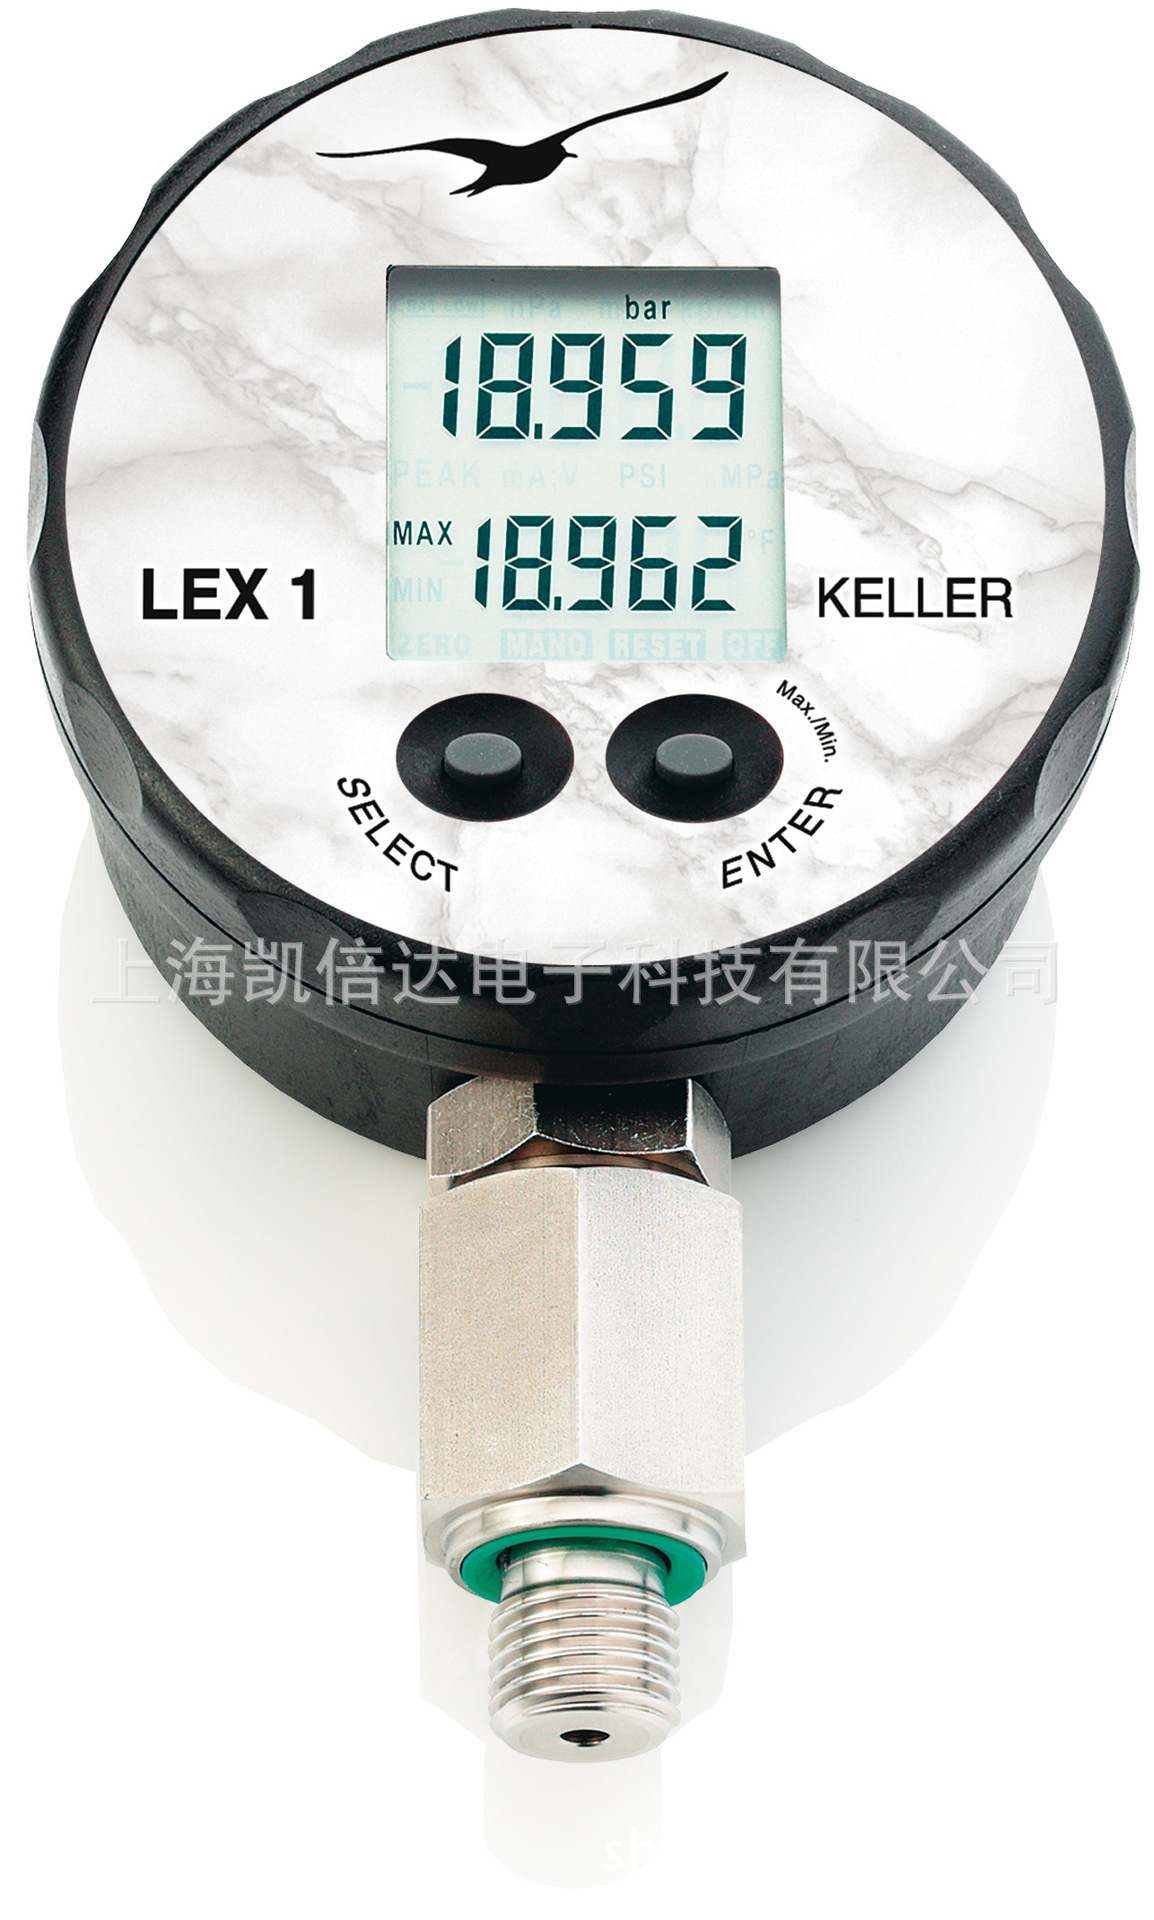 供應KELLER LEX1超高精度5位數字壓力表